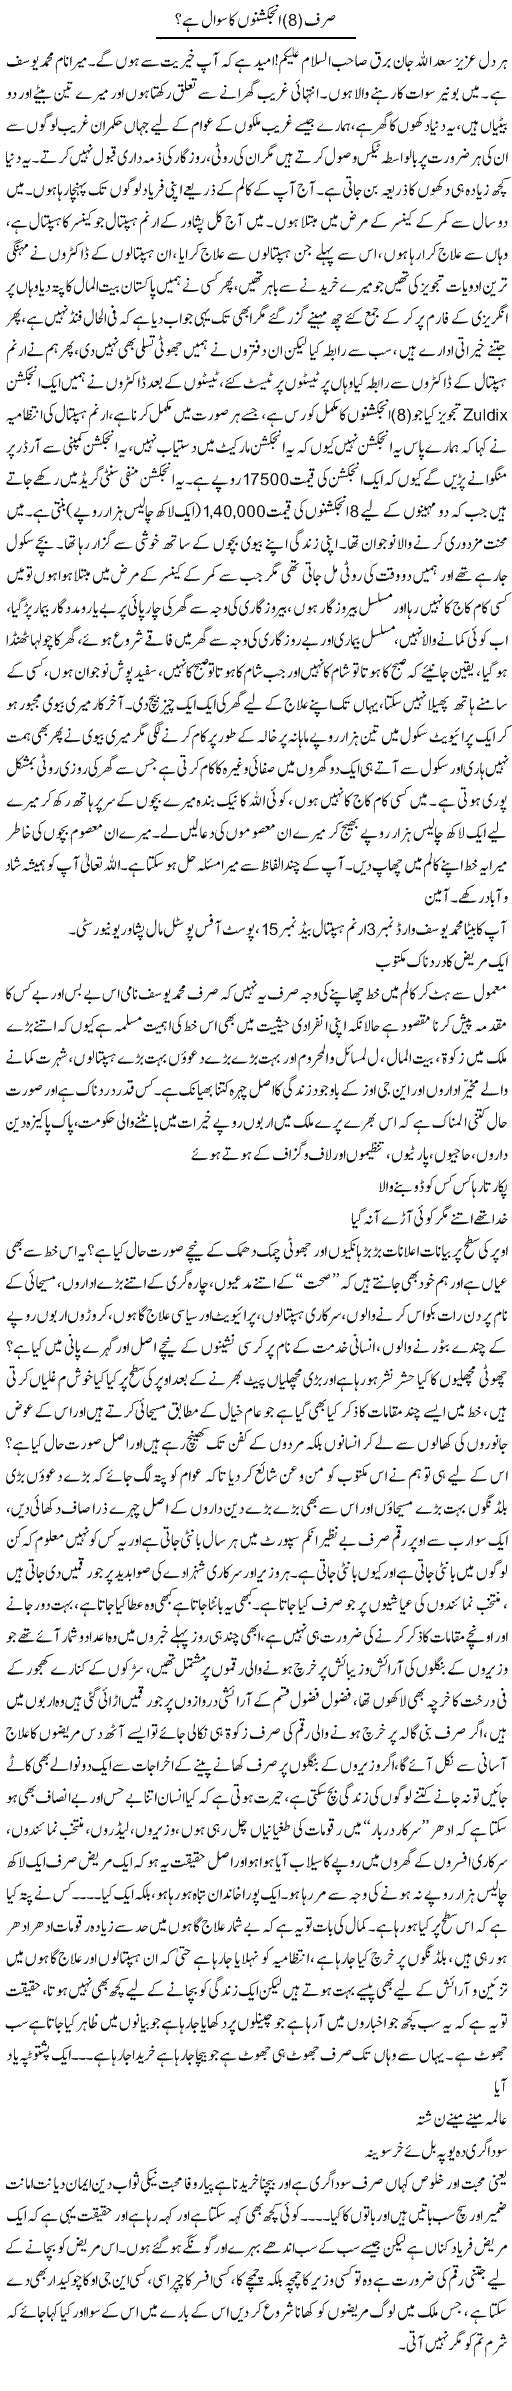 Sirf (8) Injectiono Ka Sawal Hai? | Saad Ullah Jan Barq | Daily Urdu Columns